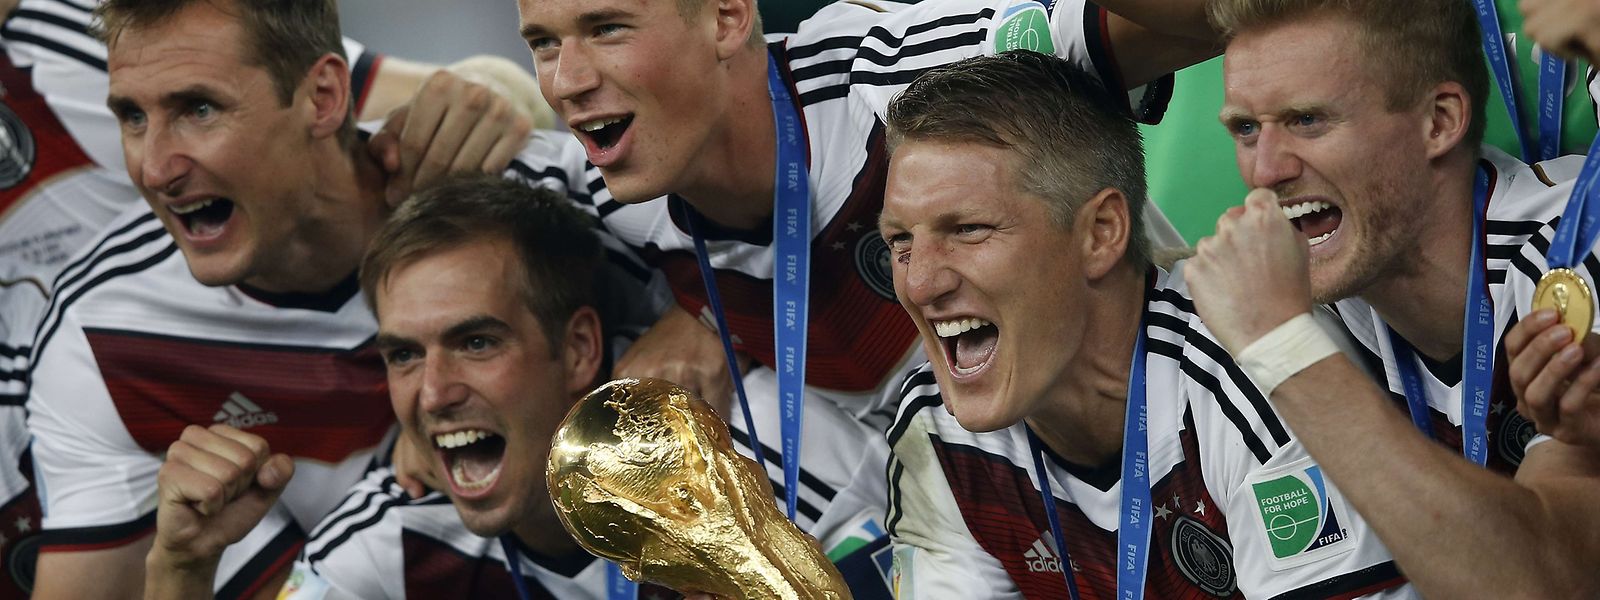 Deutschland geht als Titelverteidiger ins Turnier. Einige der Helden von 2014 sind nicht mehr dabei.